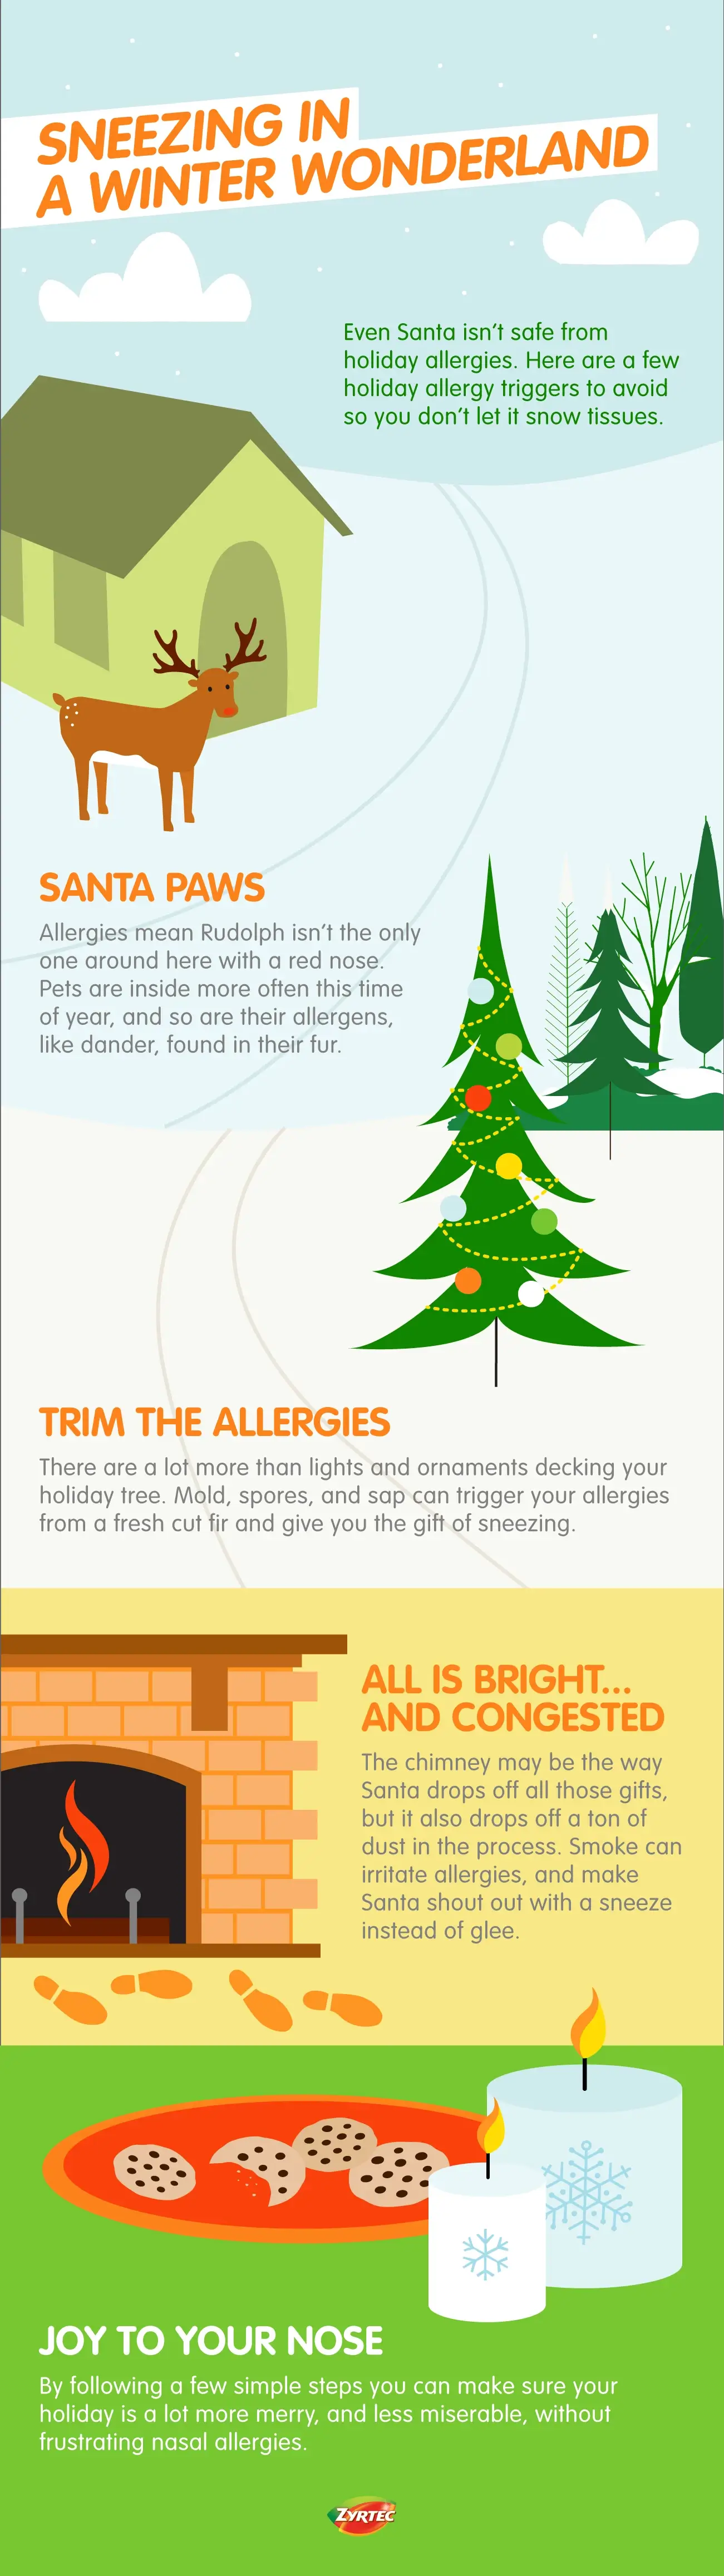 Infografía titulada "Estornudos en una maravillosa tierra invernalquot;